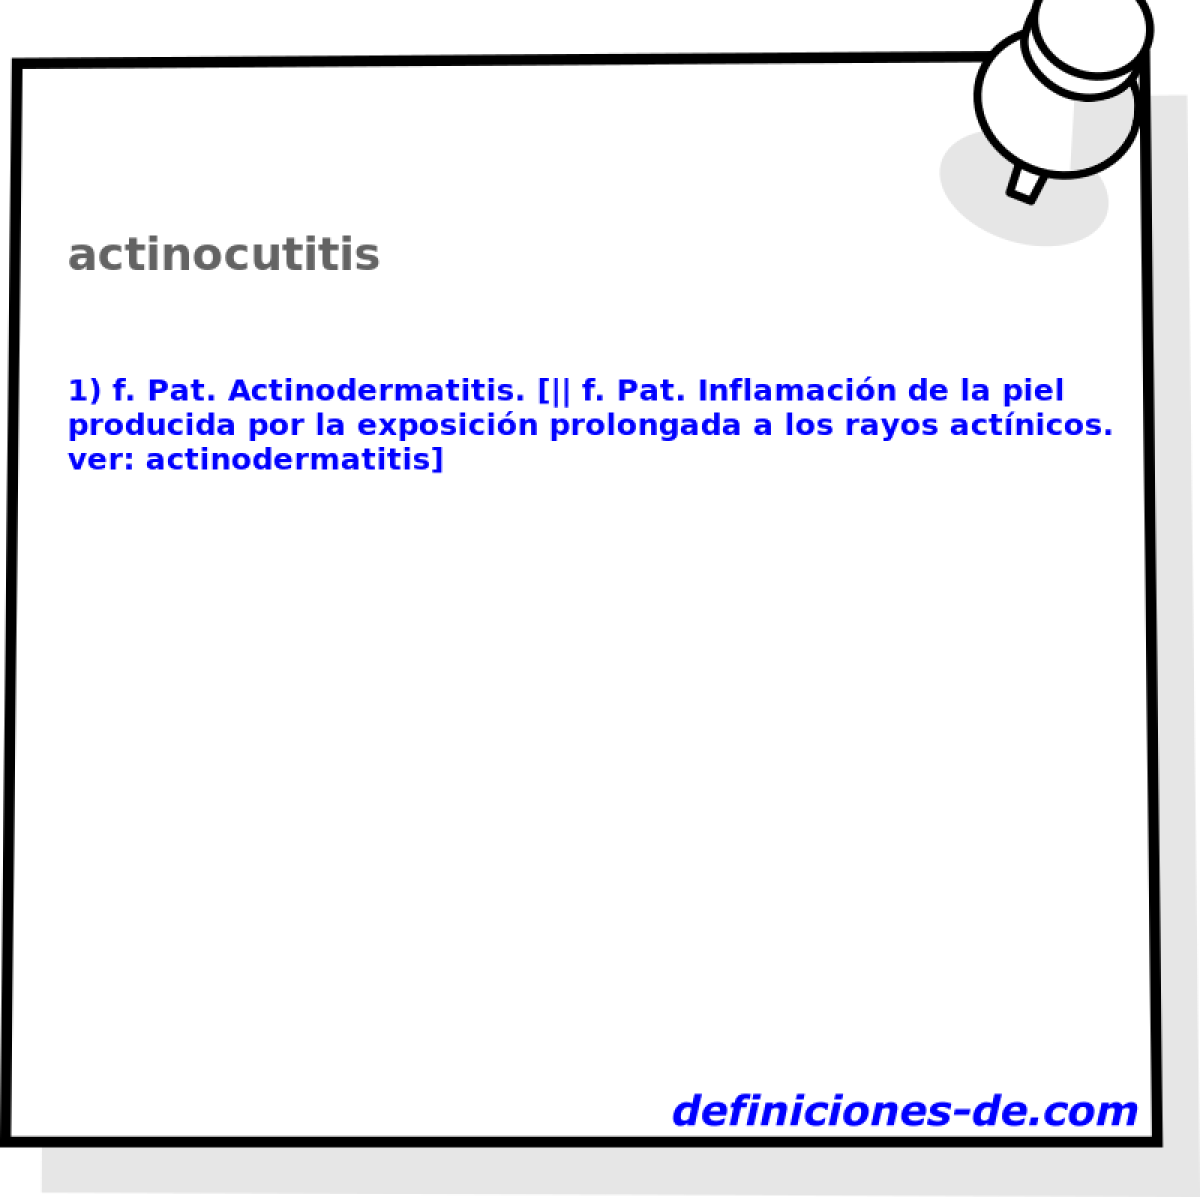 actinocutitis 